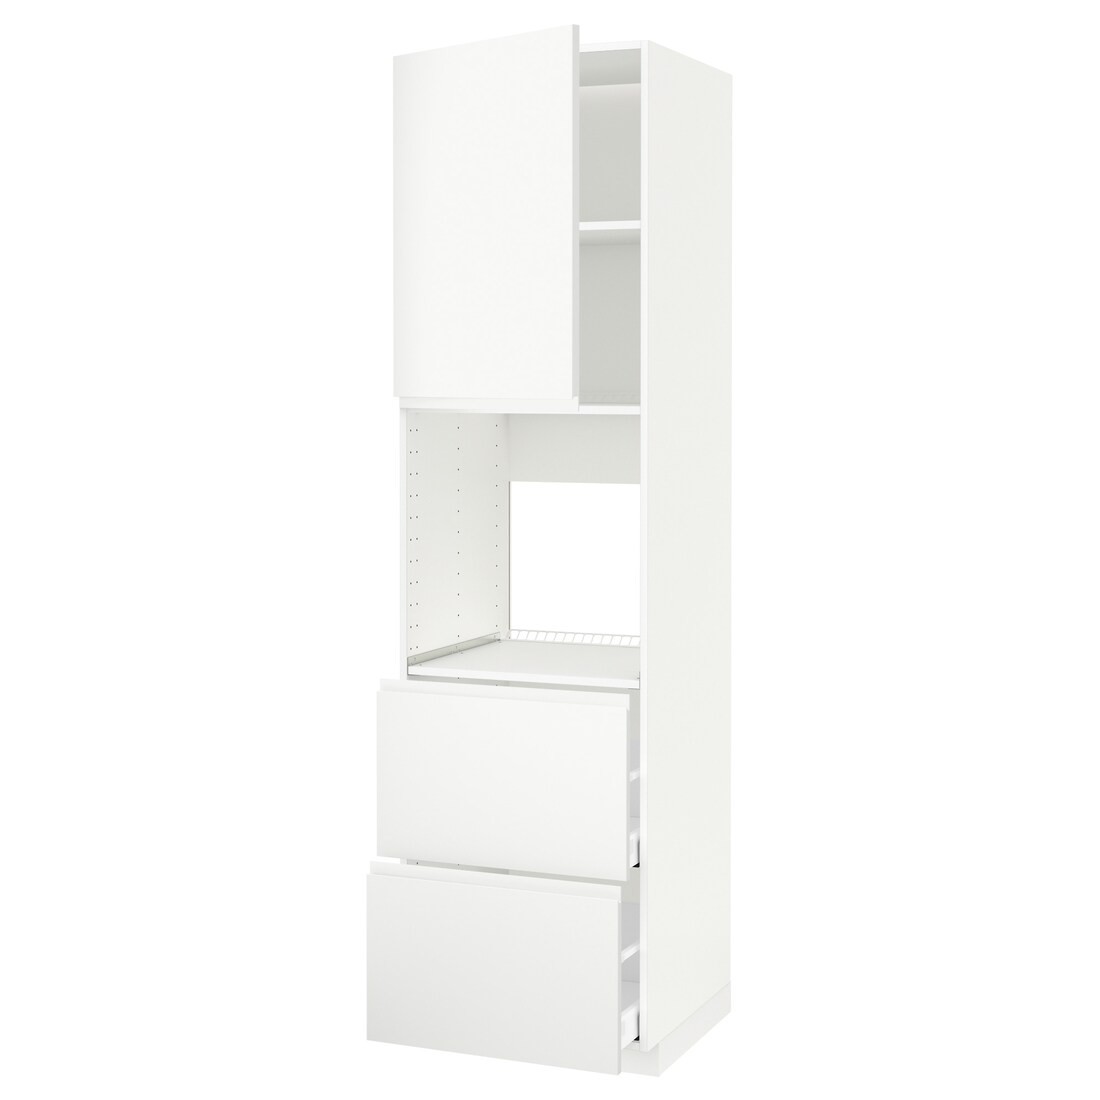 IKEA METOD МЕТОД / MAXIMERA МАКСИМЕРА Высокий шкаф для духовки с дверцей / ящиками, белый / Voxtorp матовый белый, 60x60x220 см 69462395 694.623.95